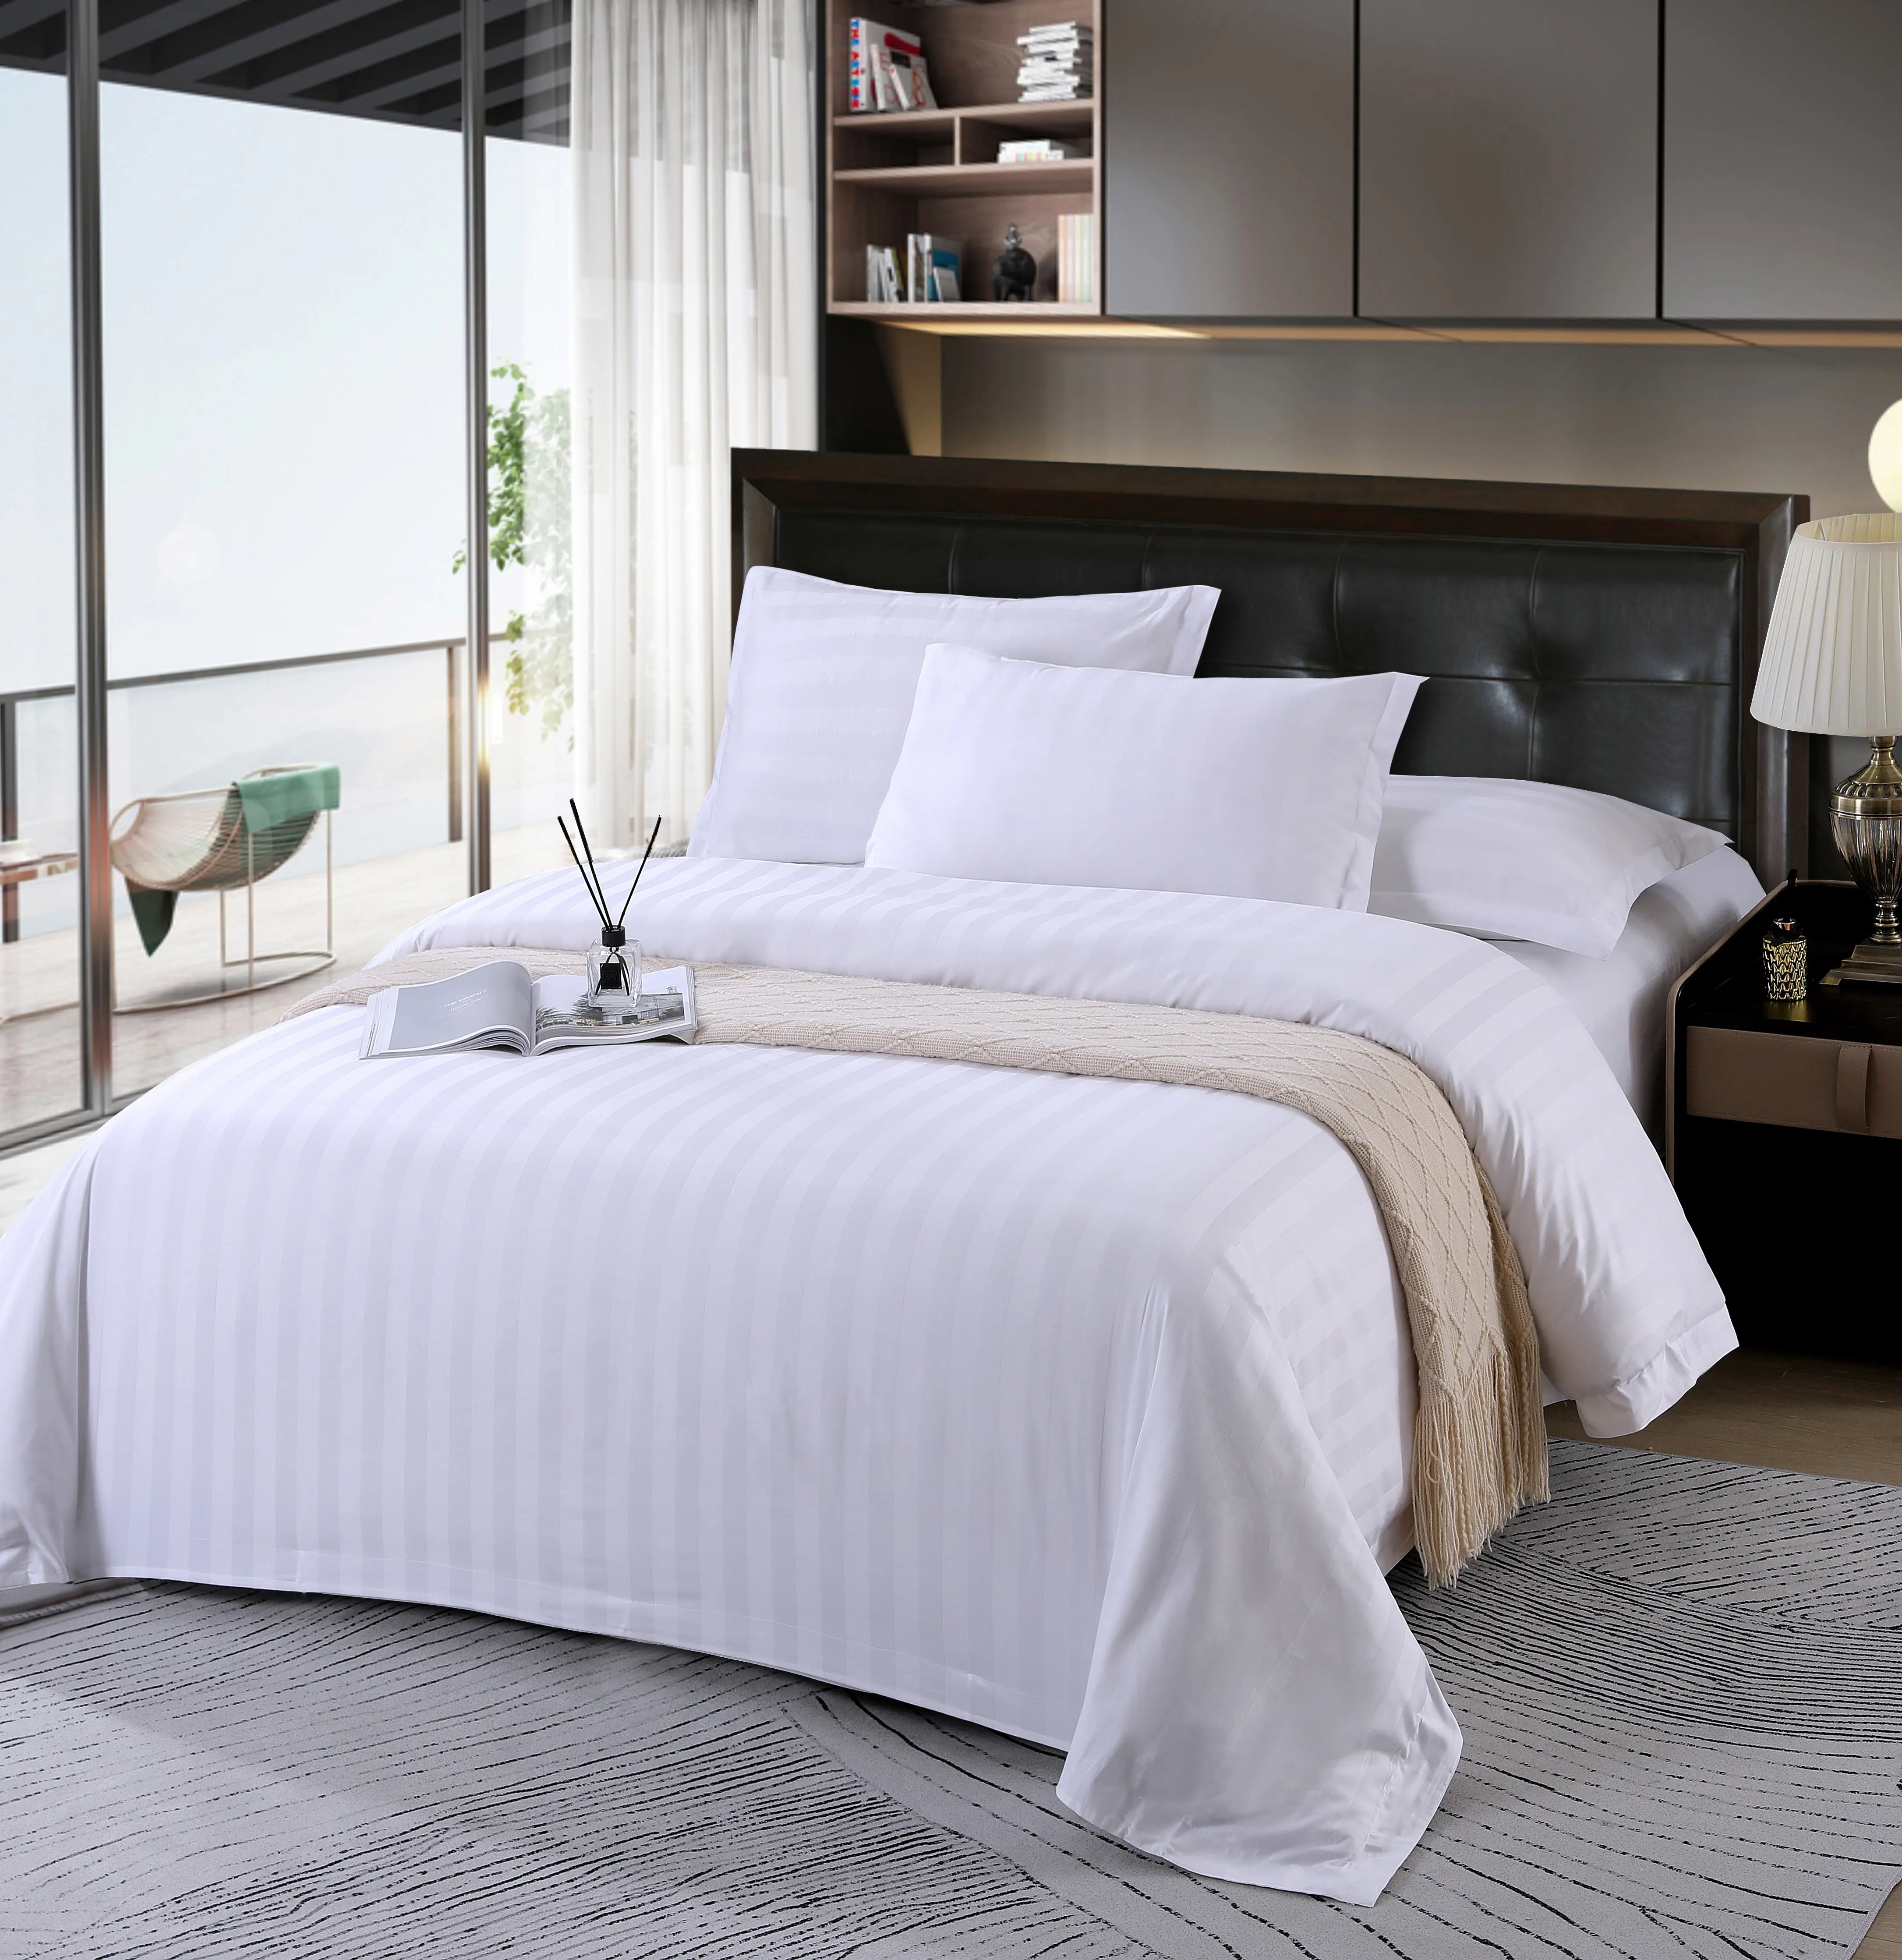 RedPine Hotel Bettwäsche 250 TC weiße Lattenbezug passende Lattenuhe Set 100 % Baumwolle Bettwäsche-Set für Hotelgebrauch